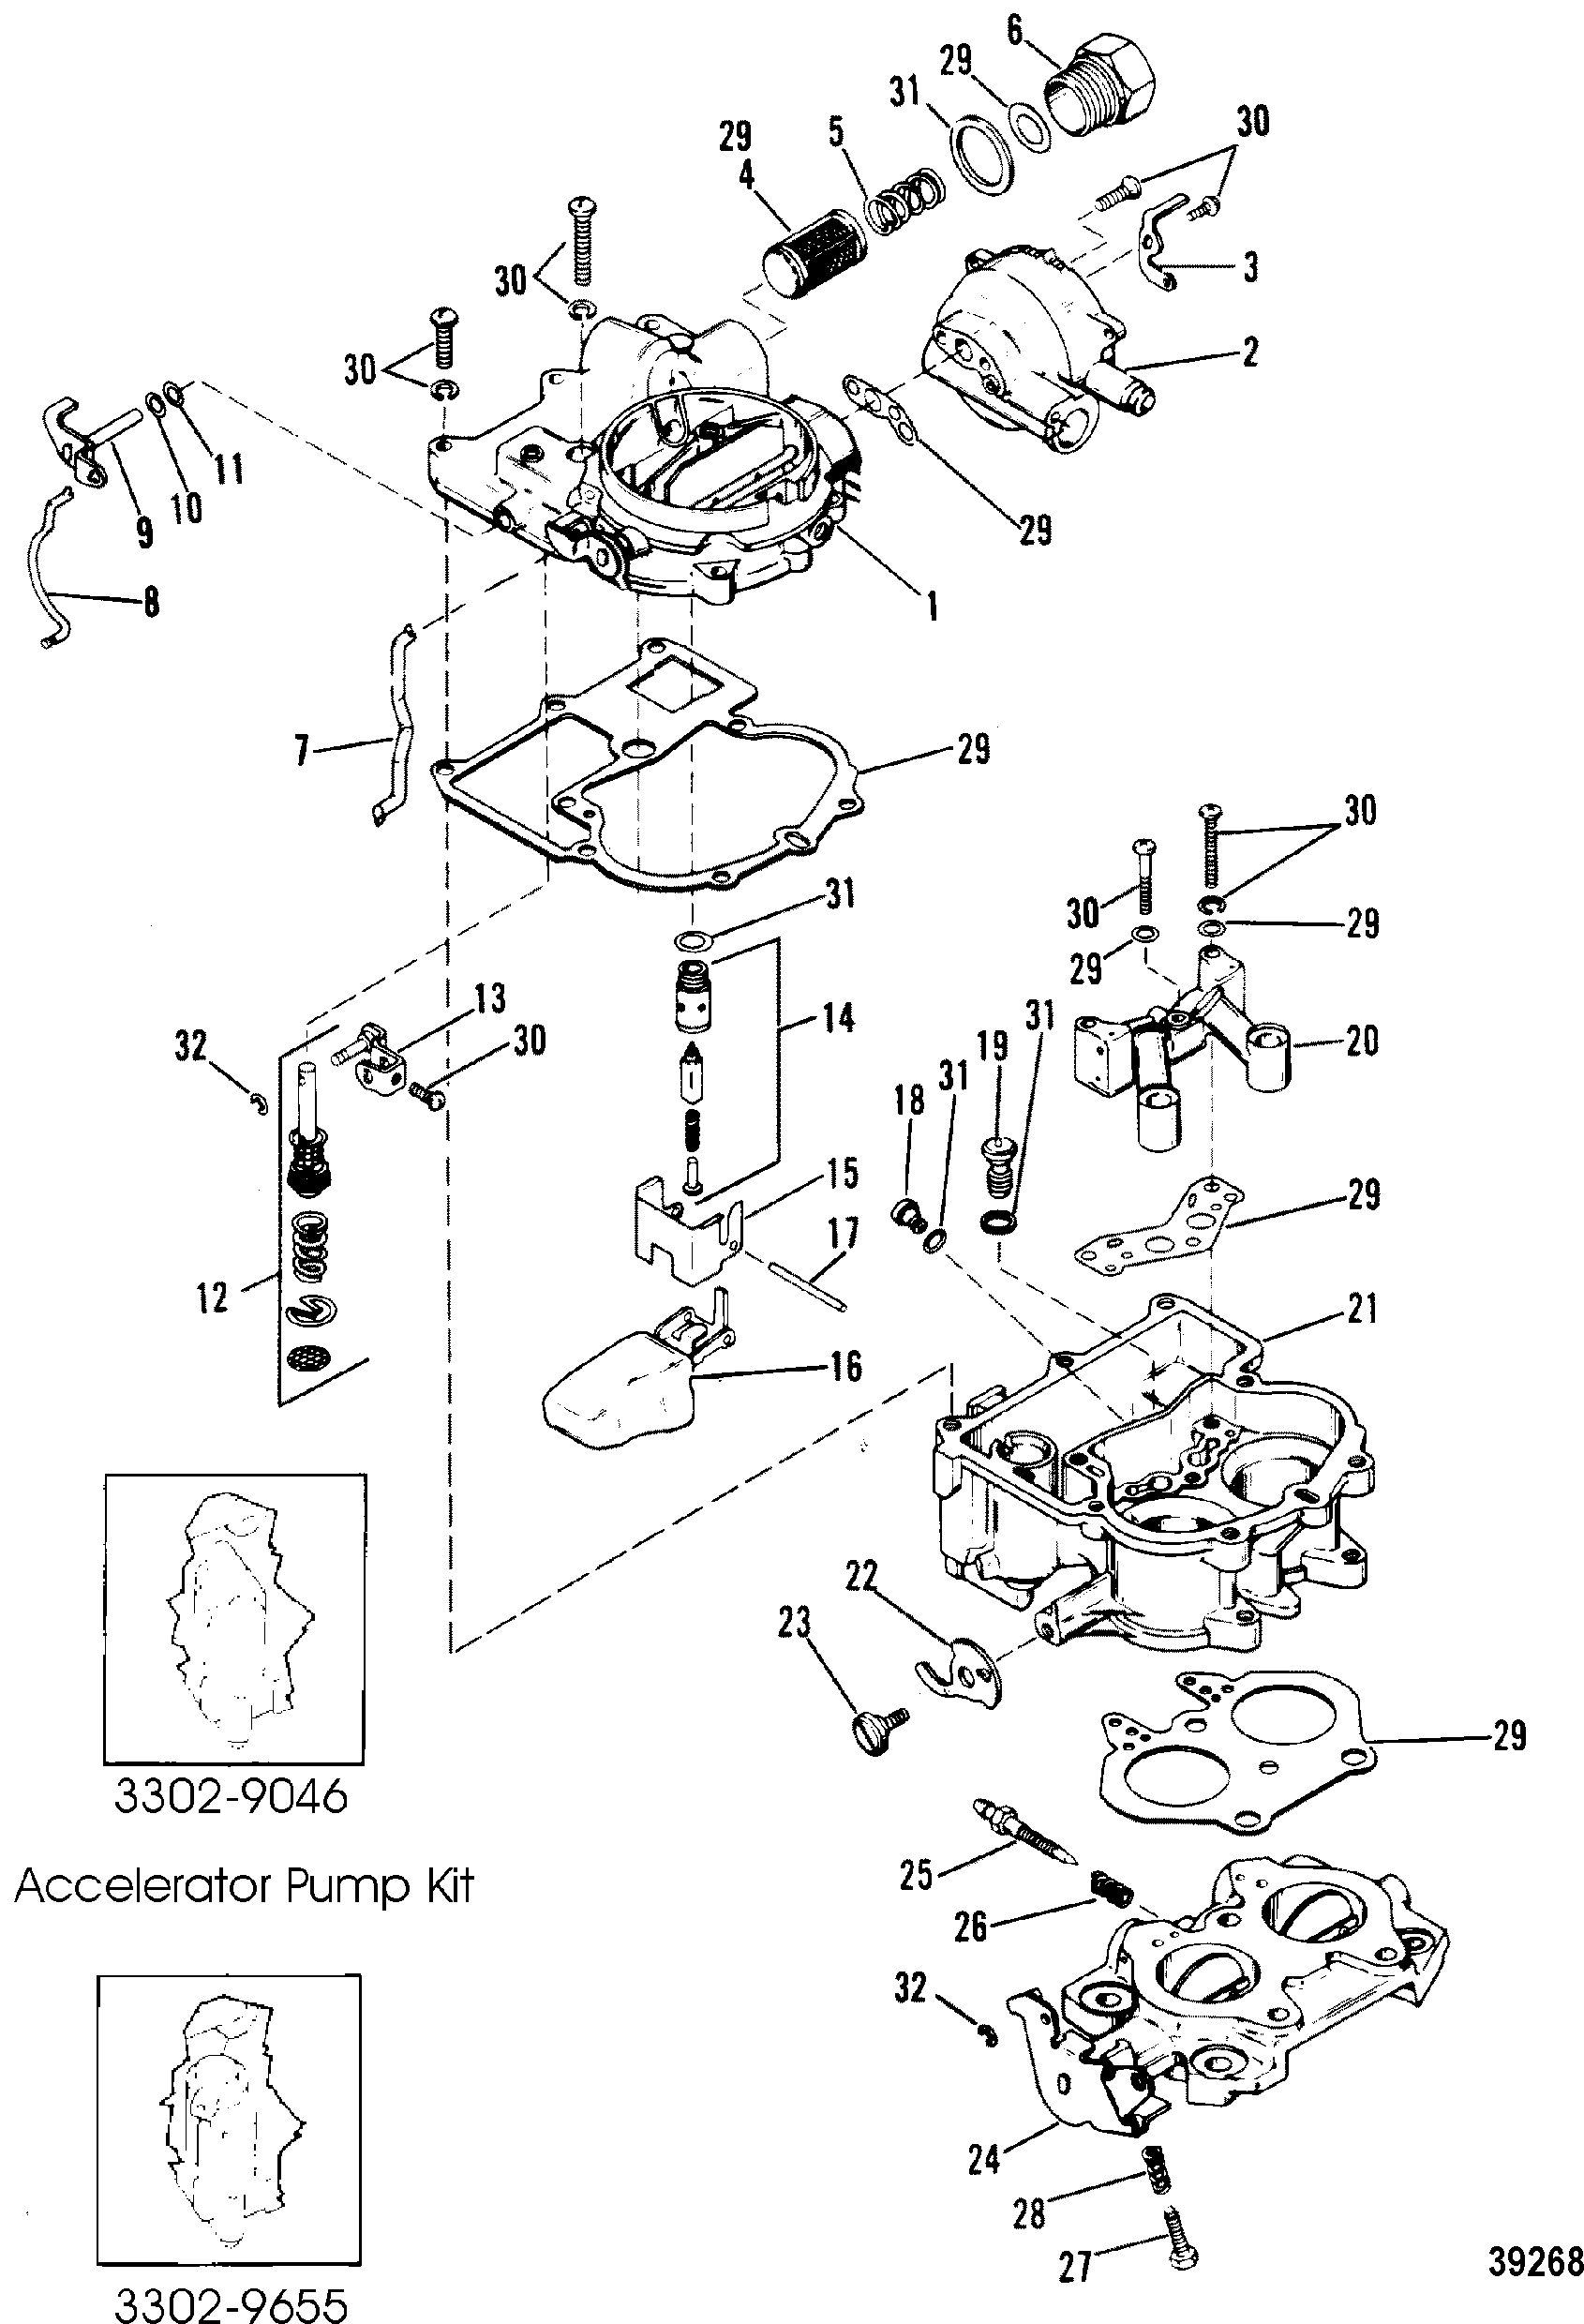 Carburetor(MerCarb) (185)